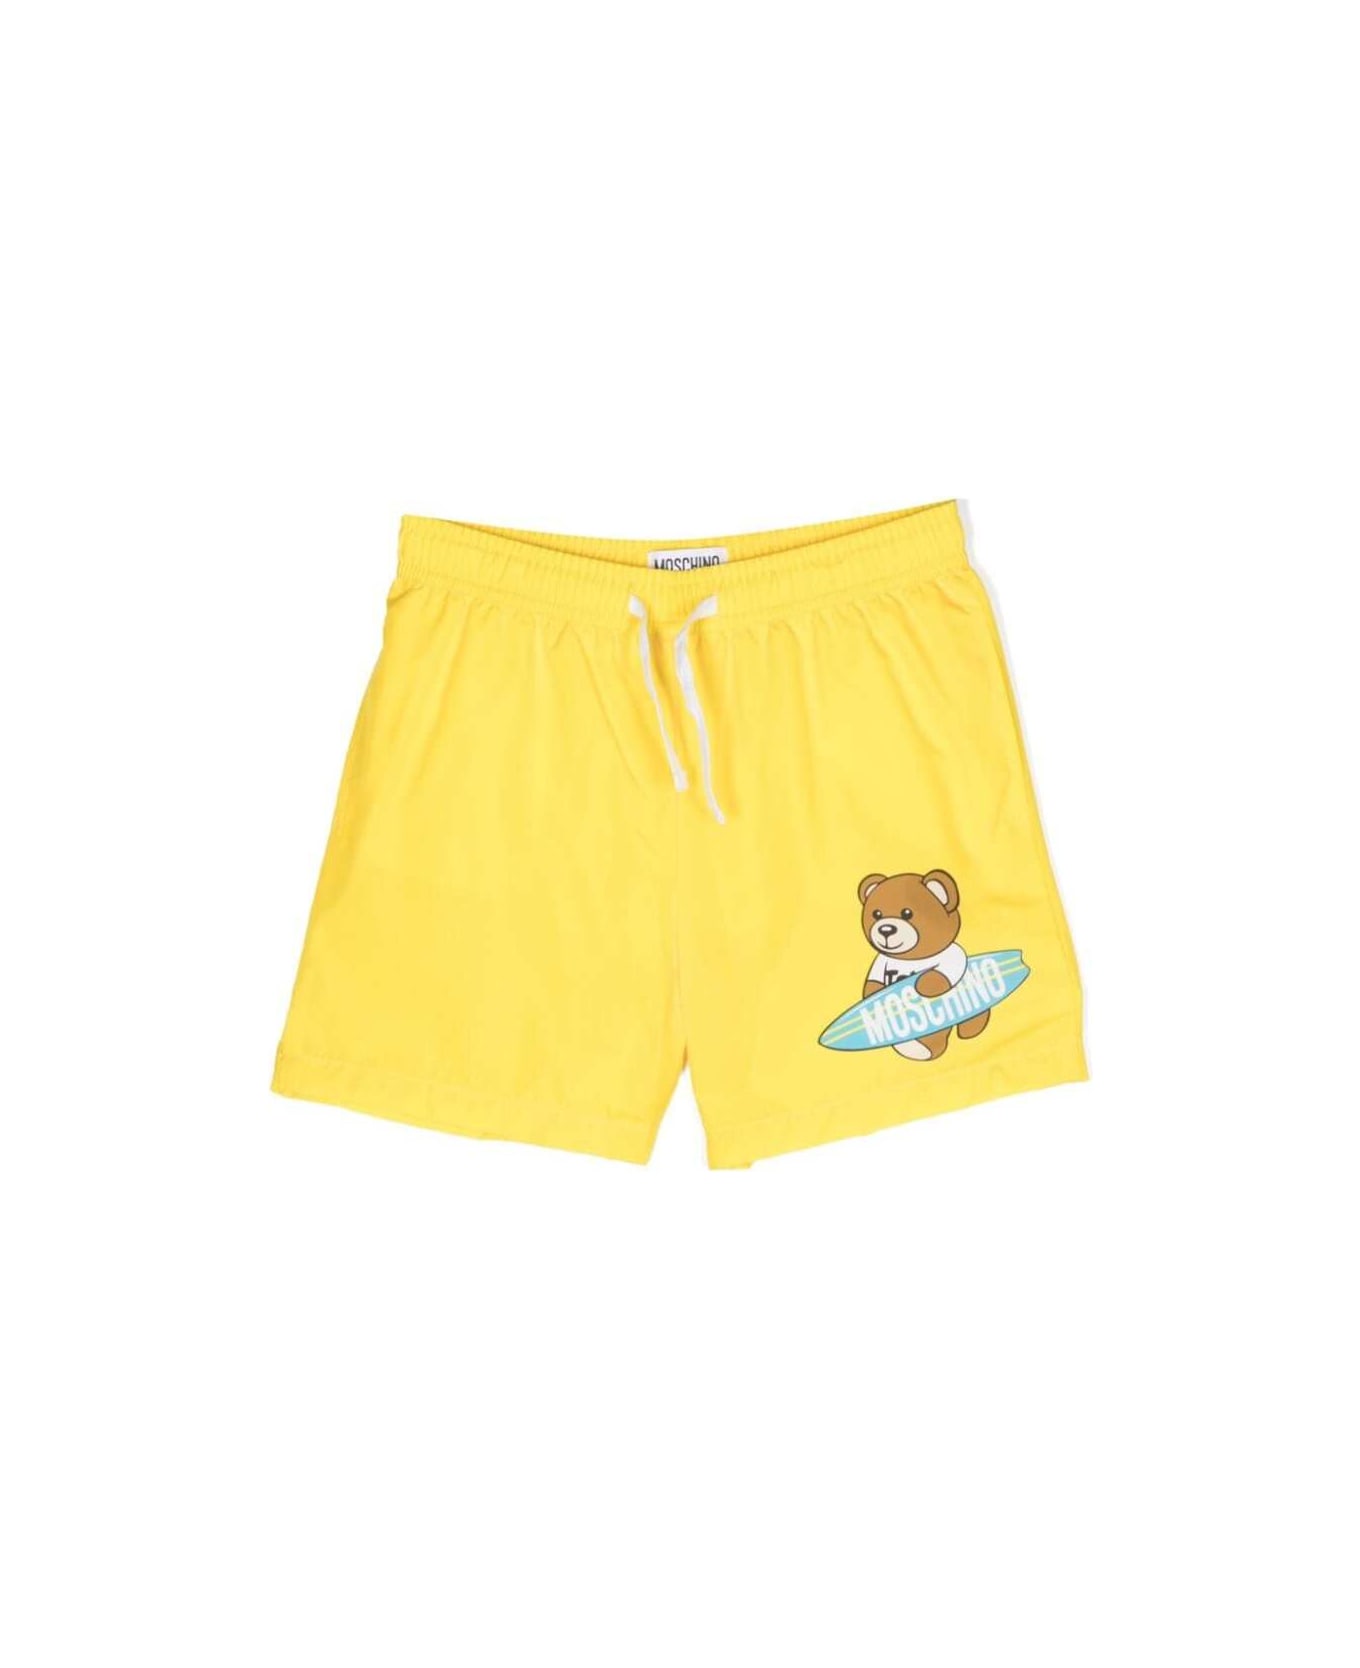 Moschino Swim Shorts - Yellow